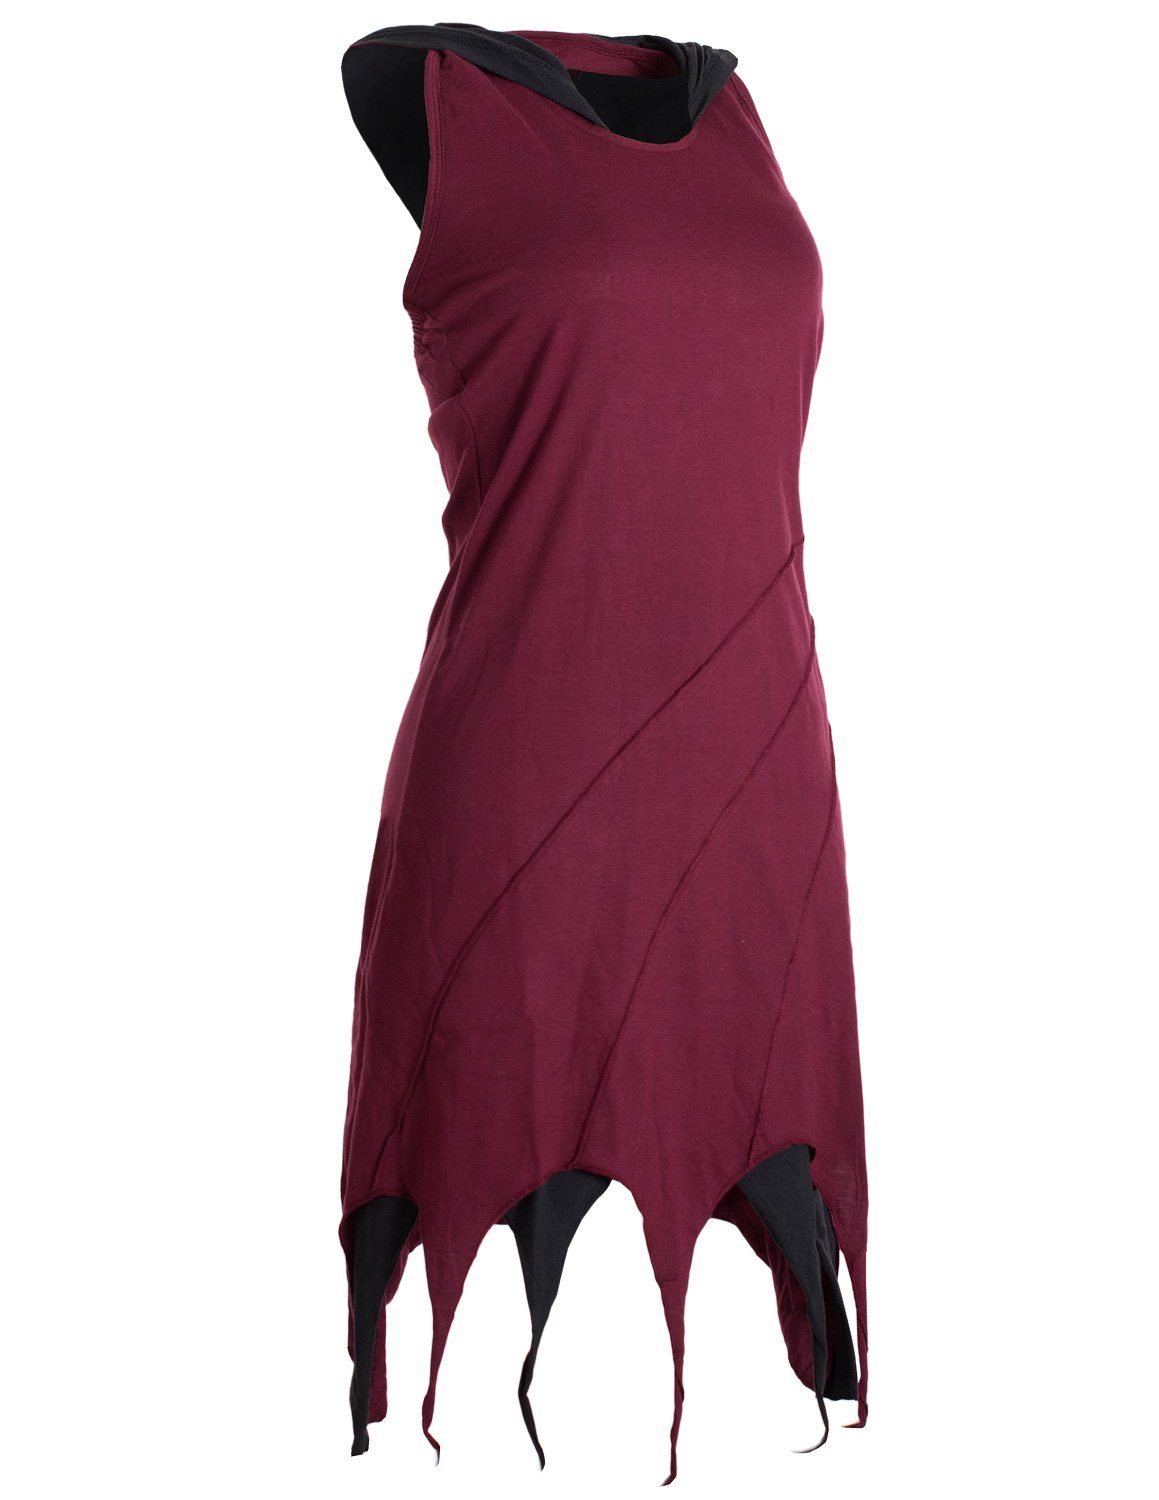 Kleid Kapuzen Hippie, Baumwolle Lagenlook Elfen aus Neckholderkleid Zipfel-Neckholder Vishes dunkelrot Goa,